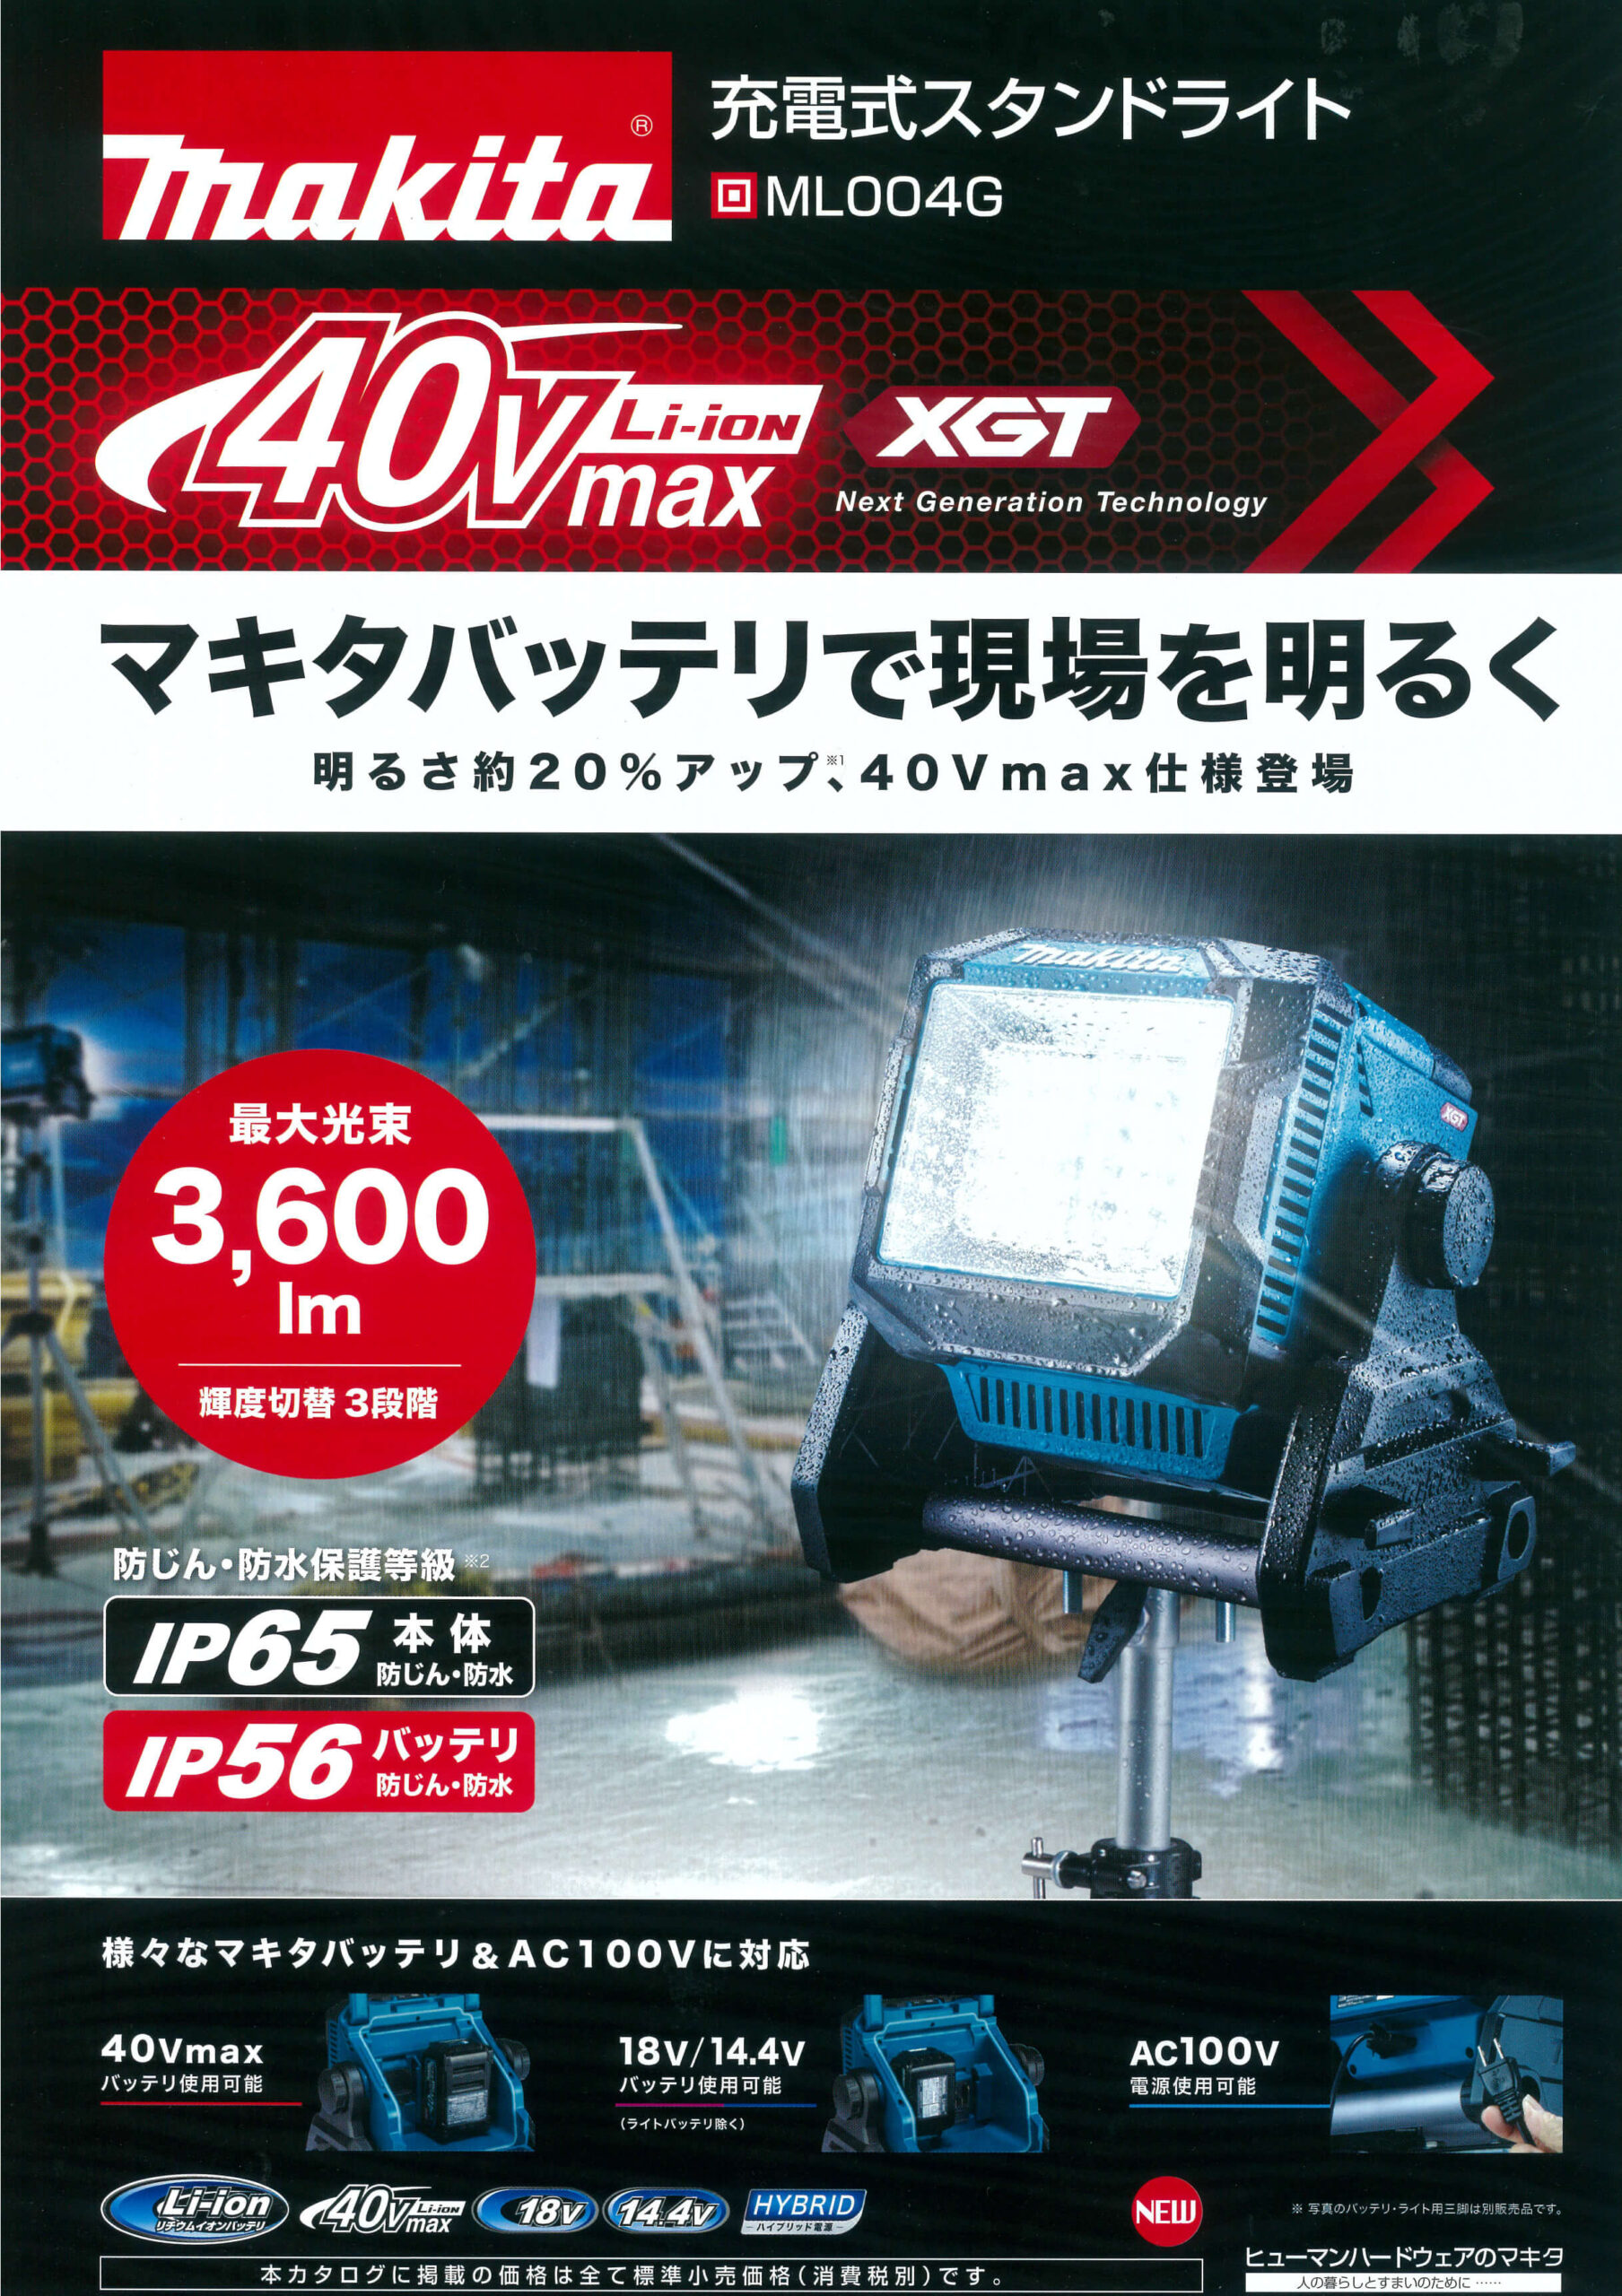 ☆比較的綺麗です☆ makita マキタ 14.4V~40Vmax 充電式ライト ML003G 電動工具 投光器 64443